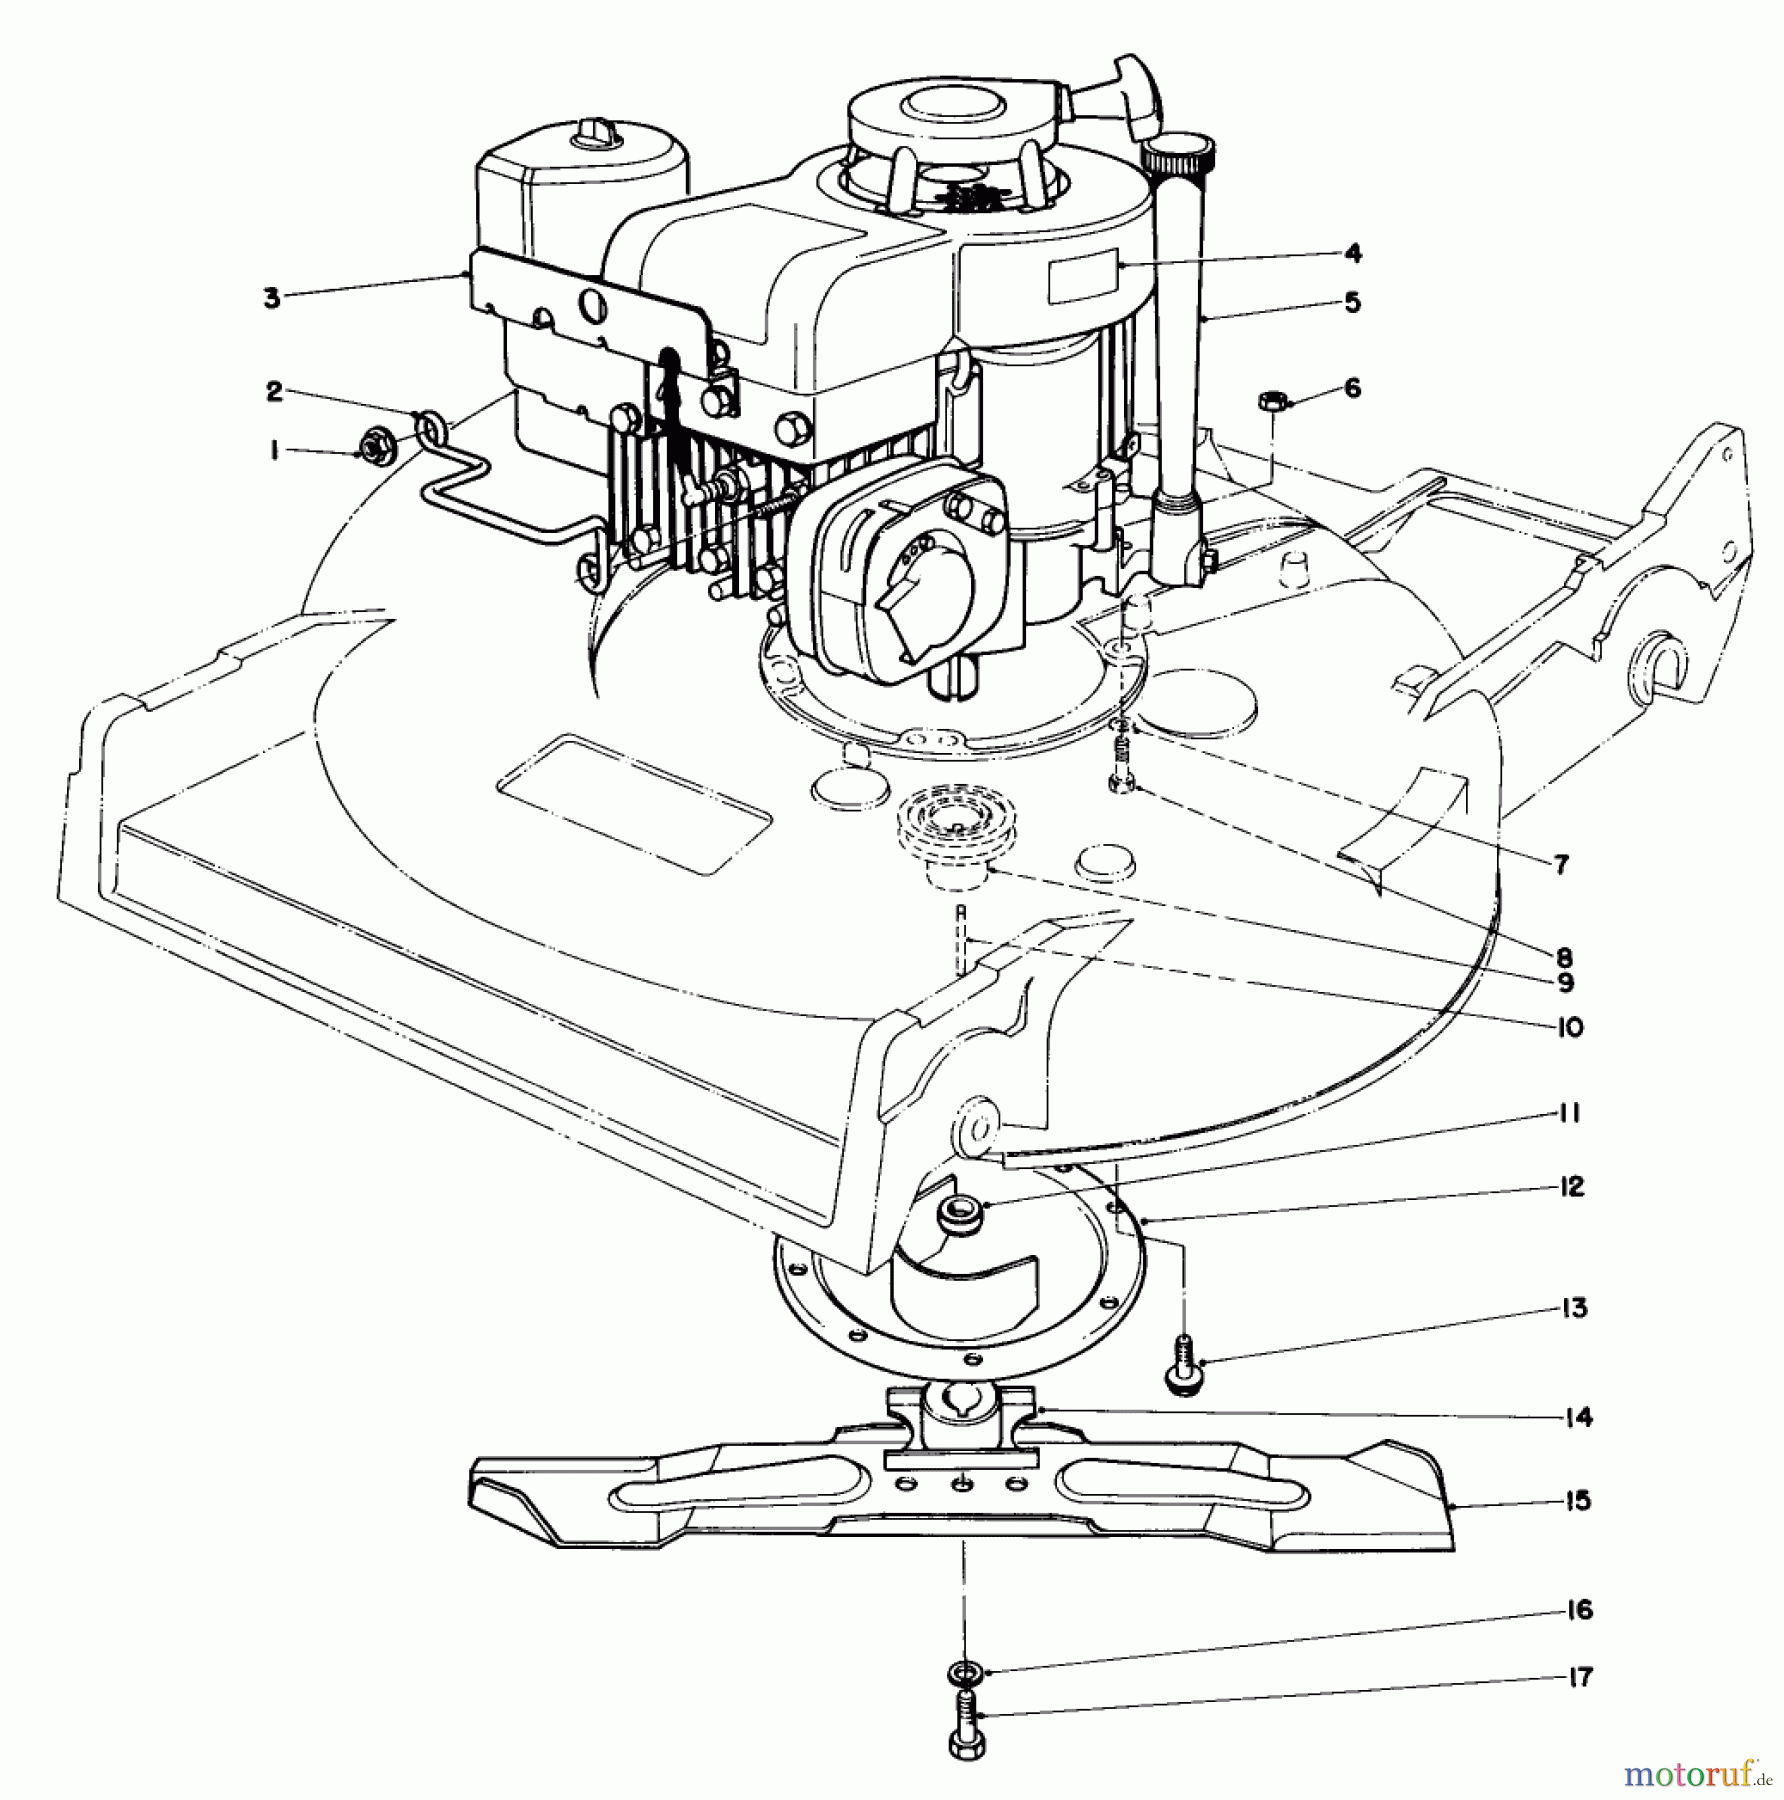  Toro Neu Mowers, Walk-Behind Seite 2 22015 - Toro Lawnmower, 1983 (3000001-3999999) ENGINE ASSEMBLY (MODELS 22015 & 22020)